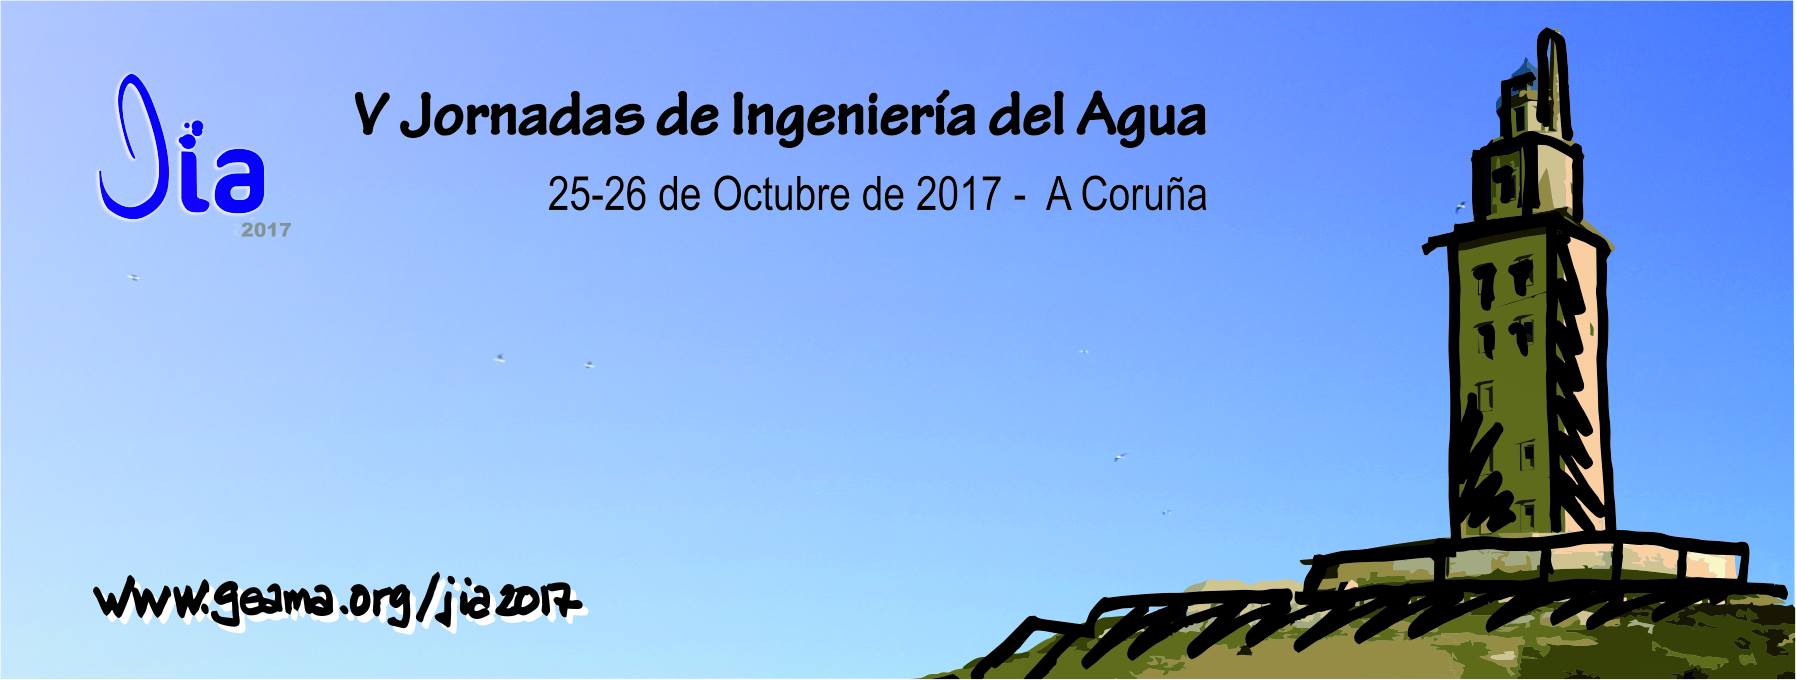 BGEO in V Jornadas de Ingeniería del Agua “JIA2017″ Conference